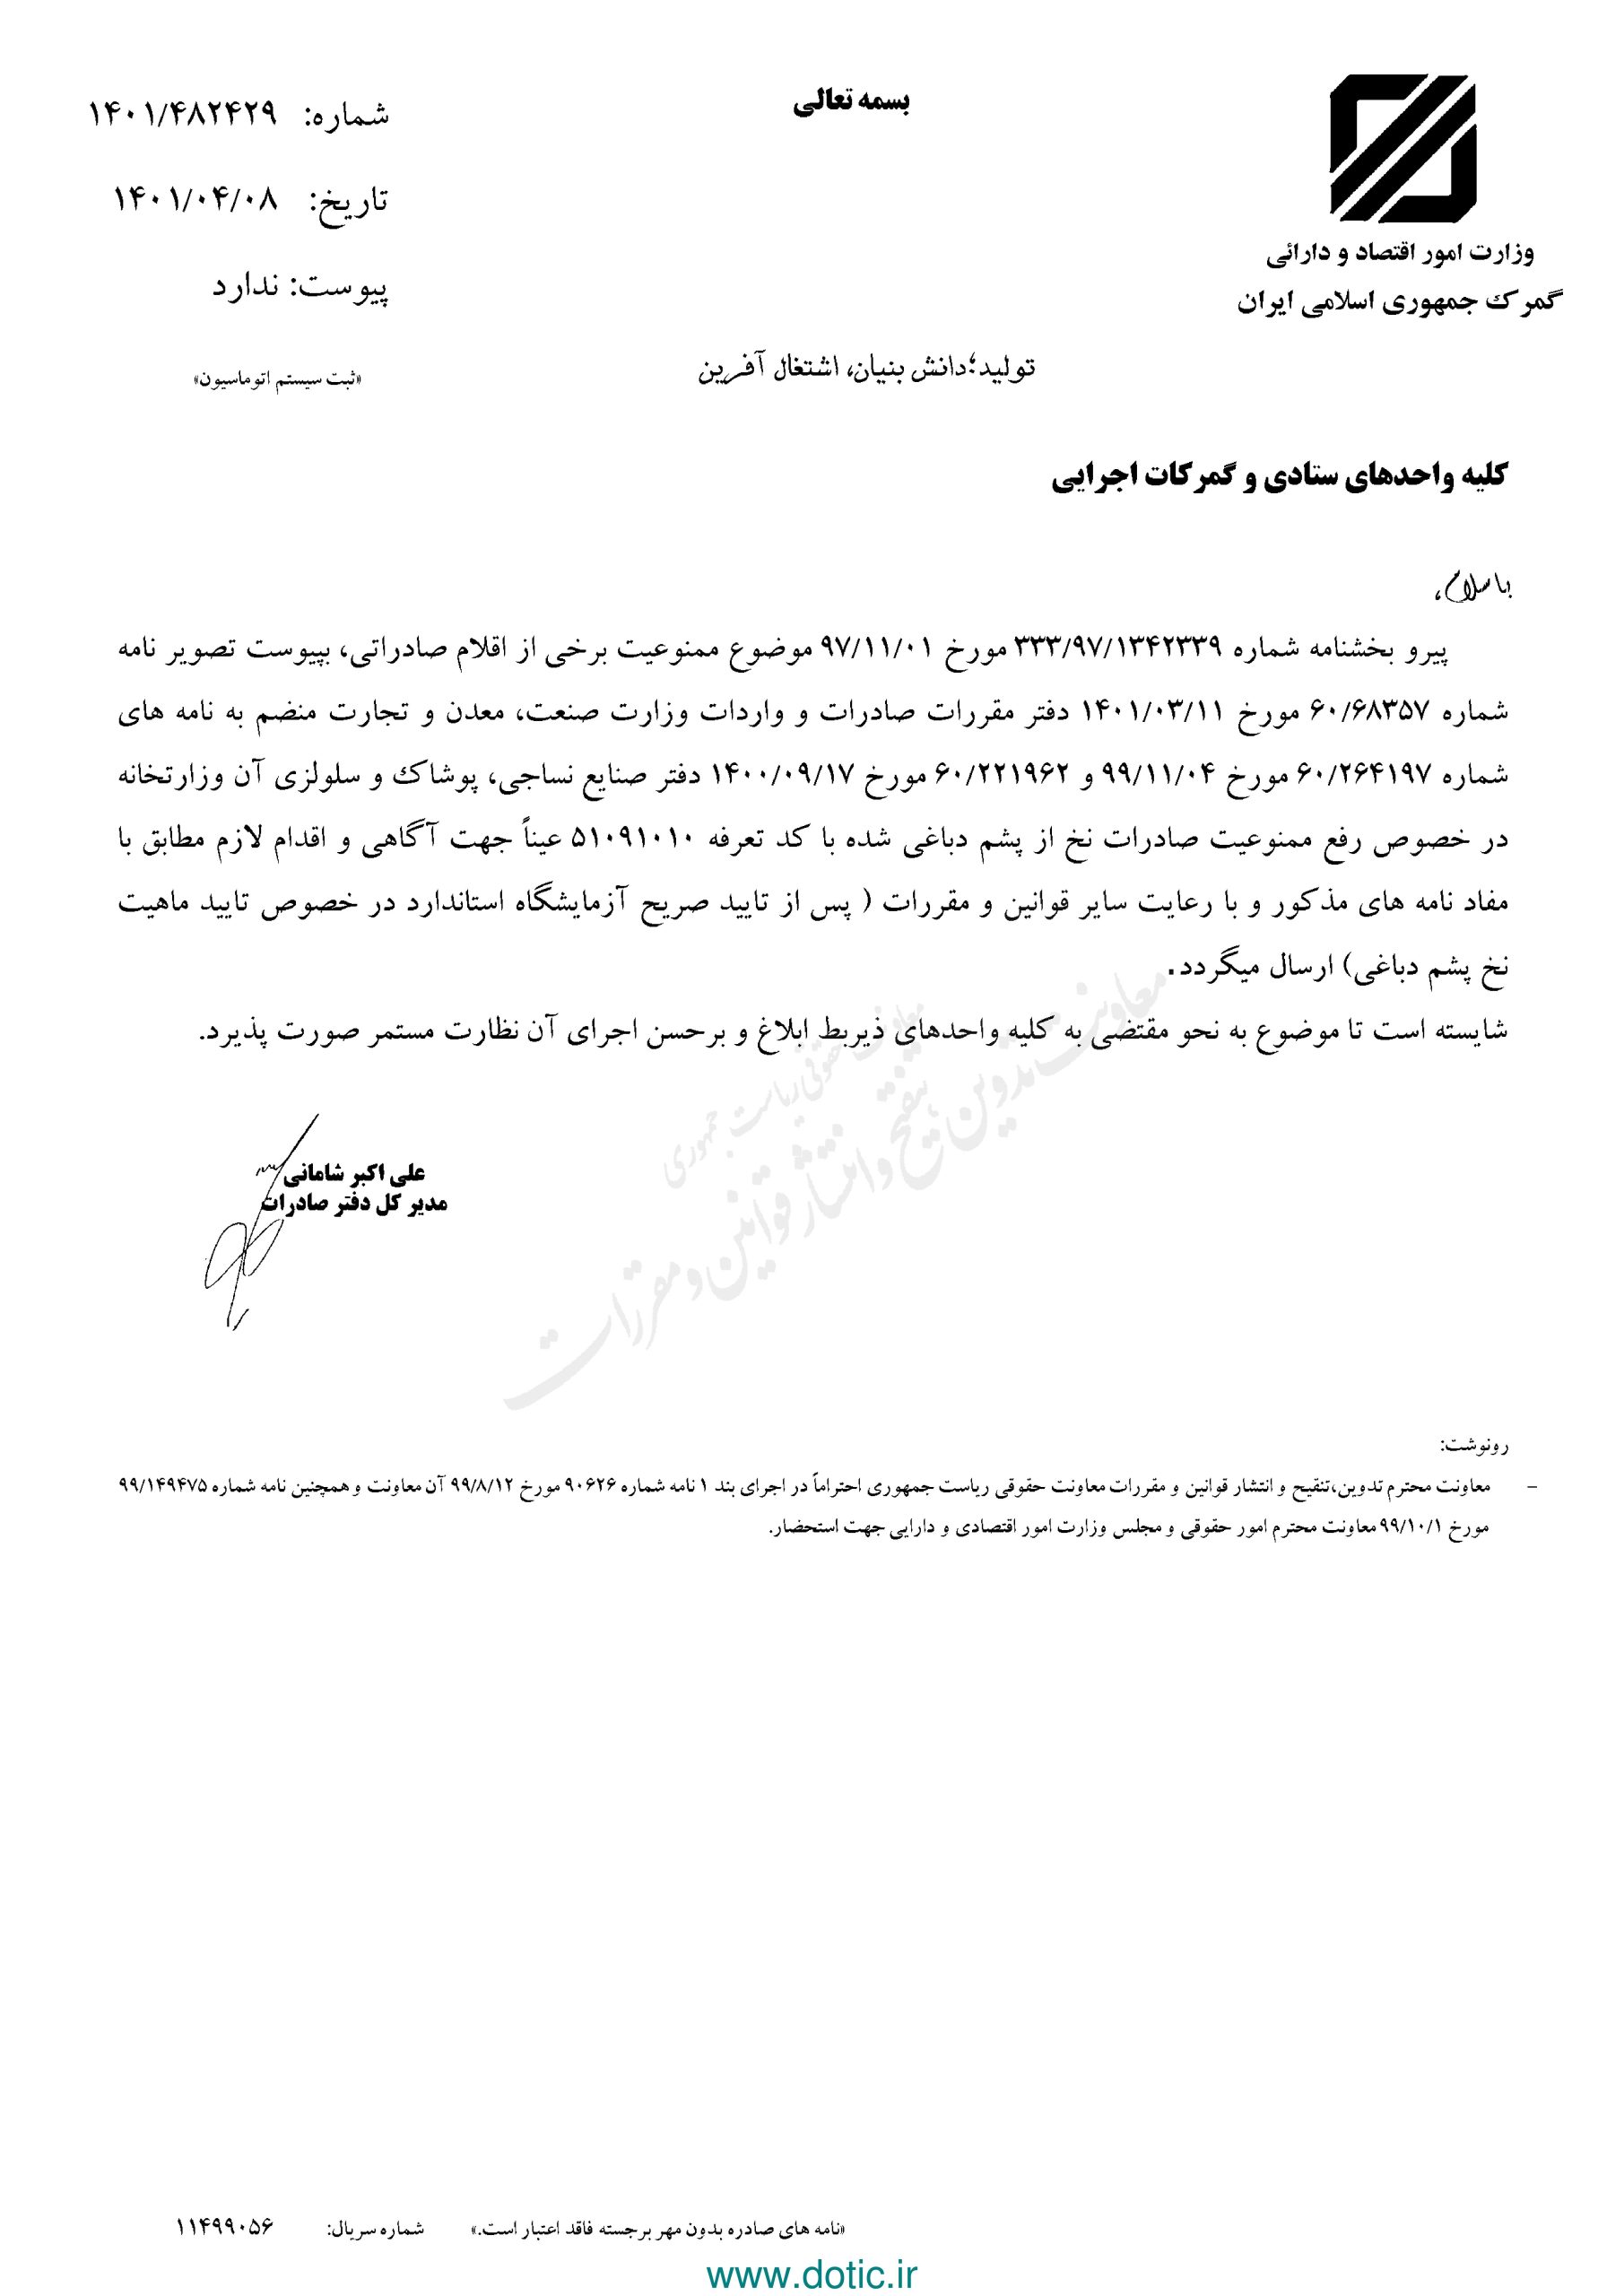 بخشنامه درخصوص رفع ممنوعیت صادرات نخ از پشم دباغی شده ۱۴۰۱/۰۴/۰۸